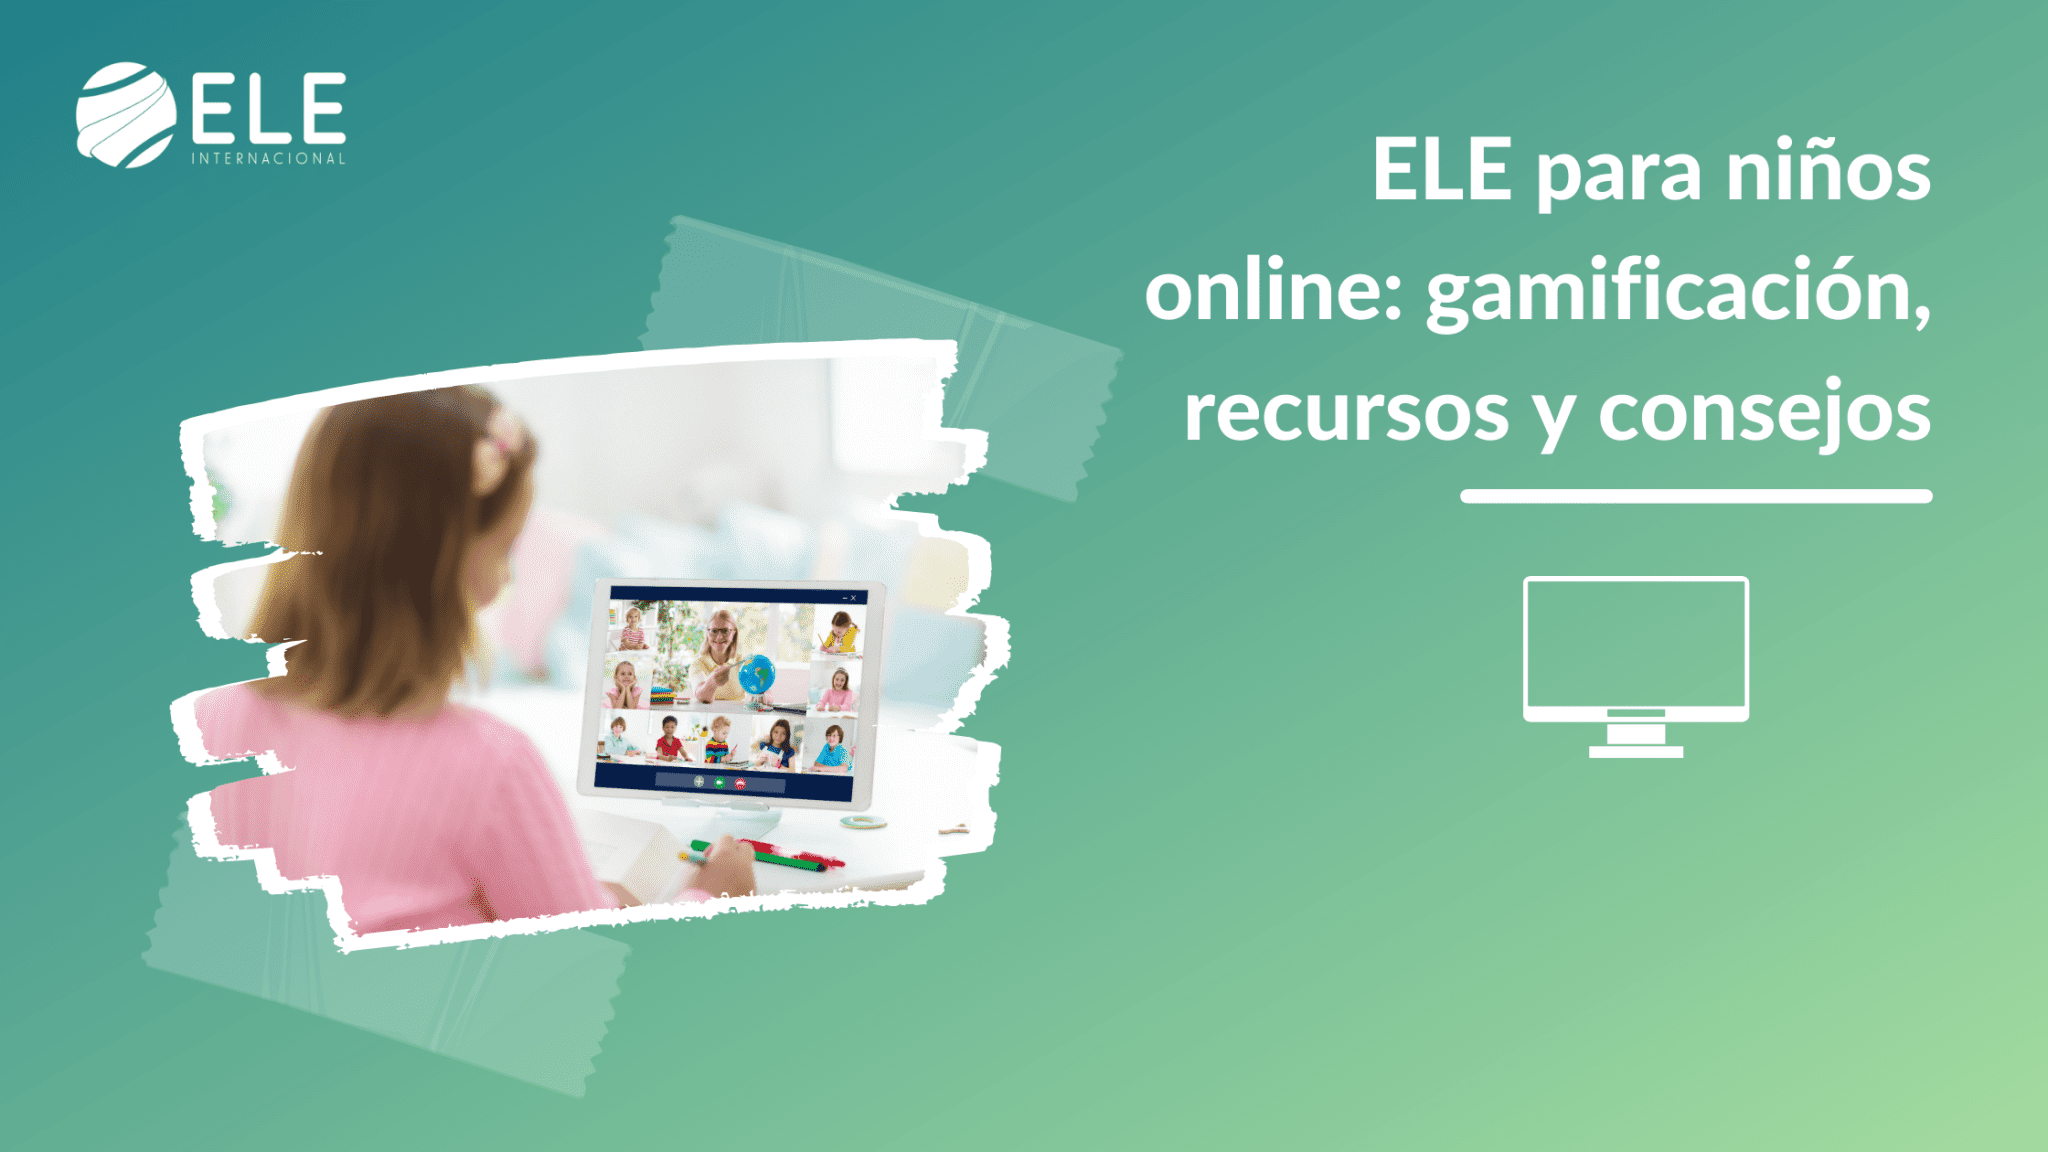 ELE para niños online: gamificación, recursos y consejos